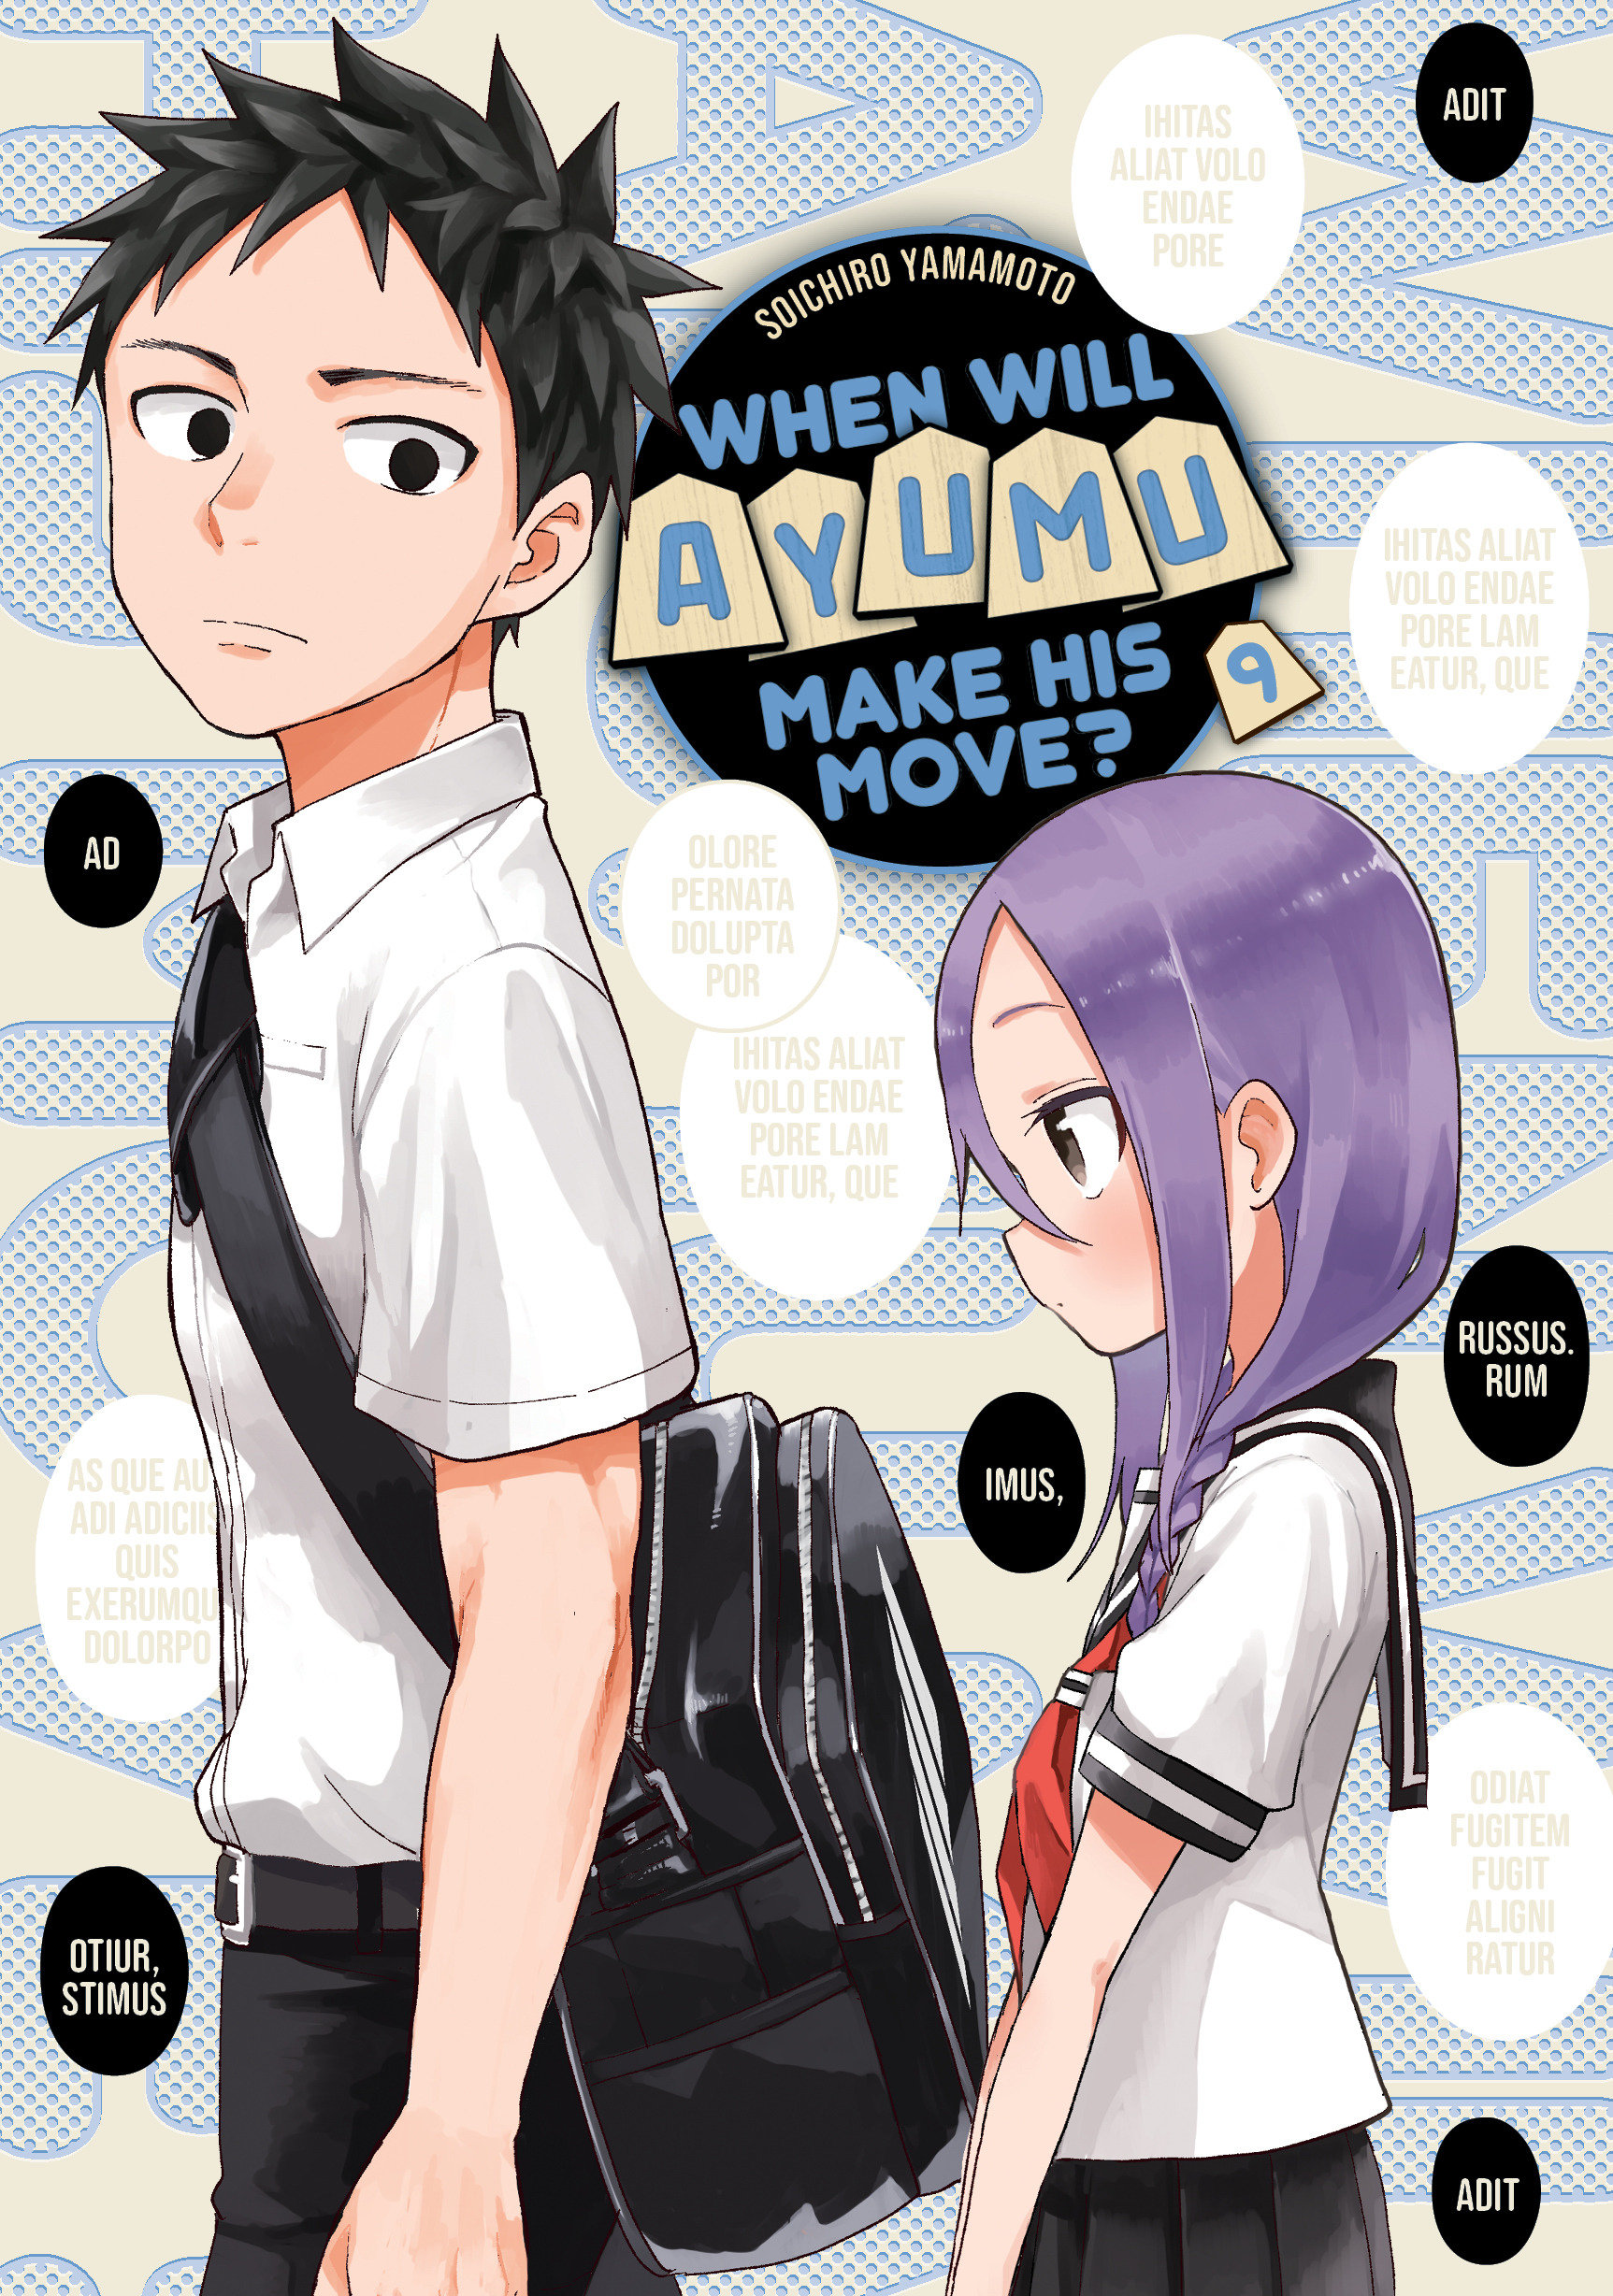 Manga Like When Will Ayumu Make His Move?